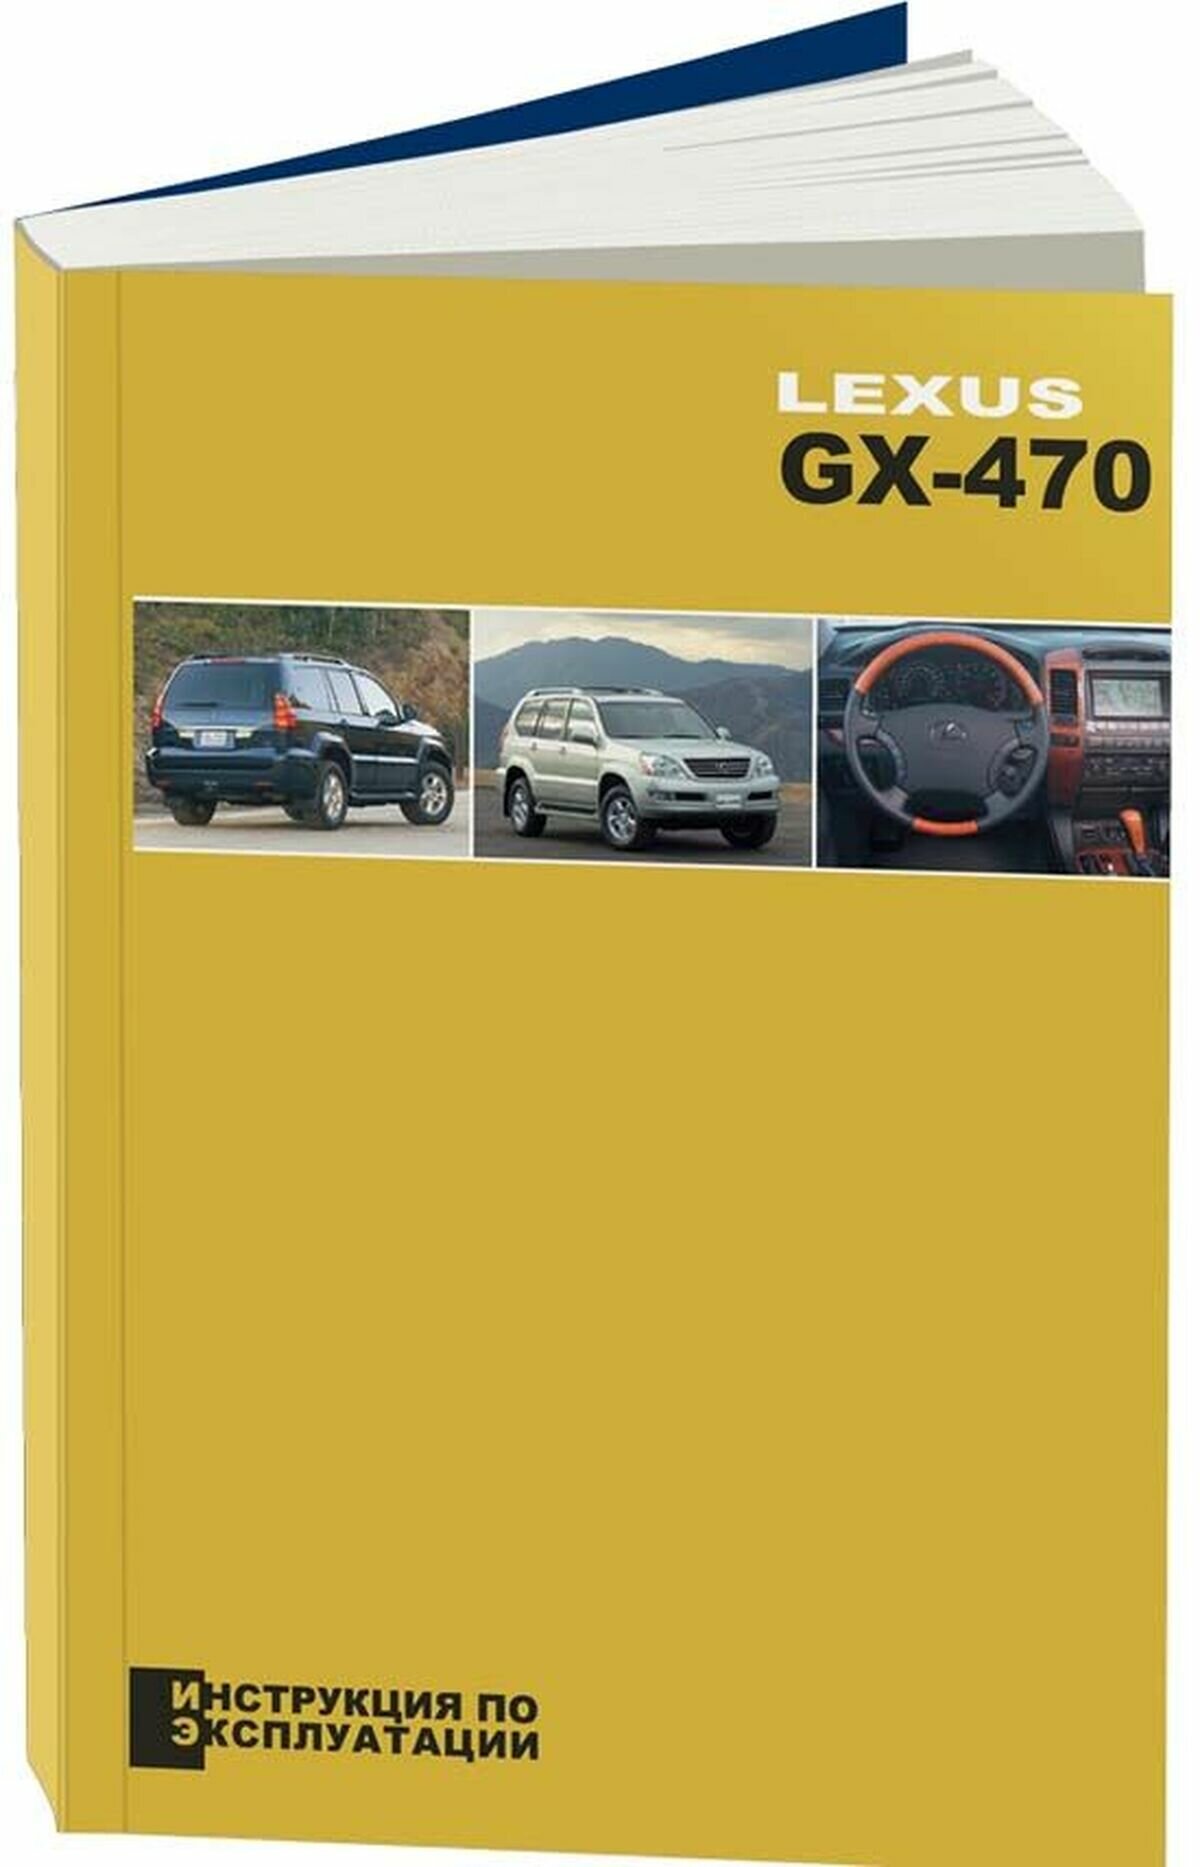 Автокнига: руководство / инструкция по эксплуатации и техническому обслуживанию LEXUS GX 470 (лексус ГХ 470) 5-88850-288-X издательство Легион-Aвтодата